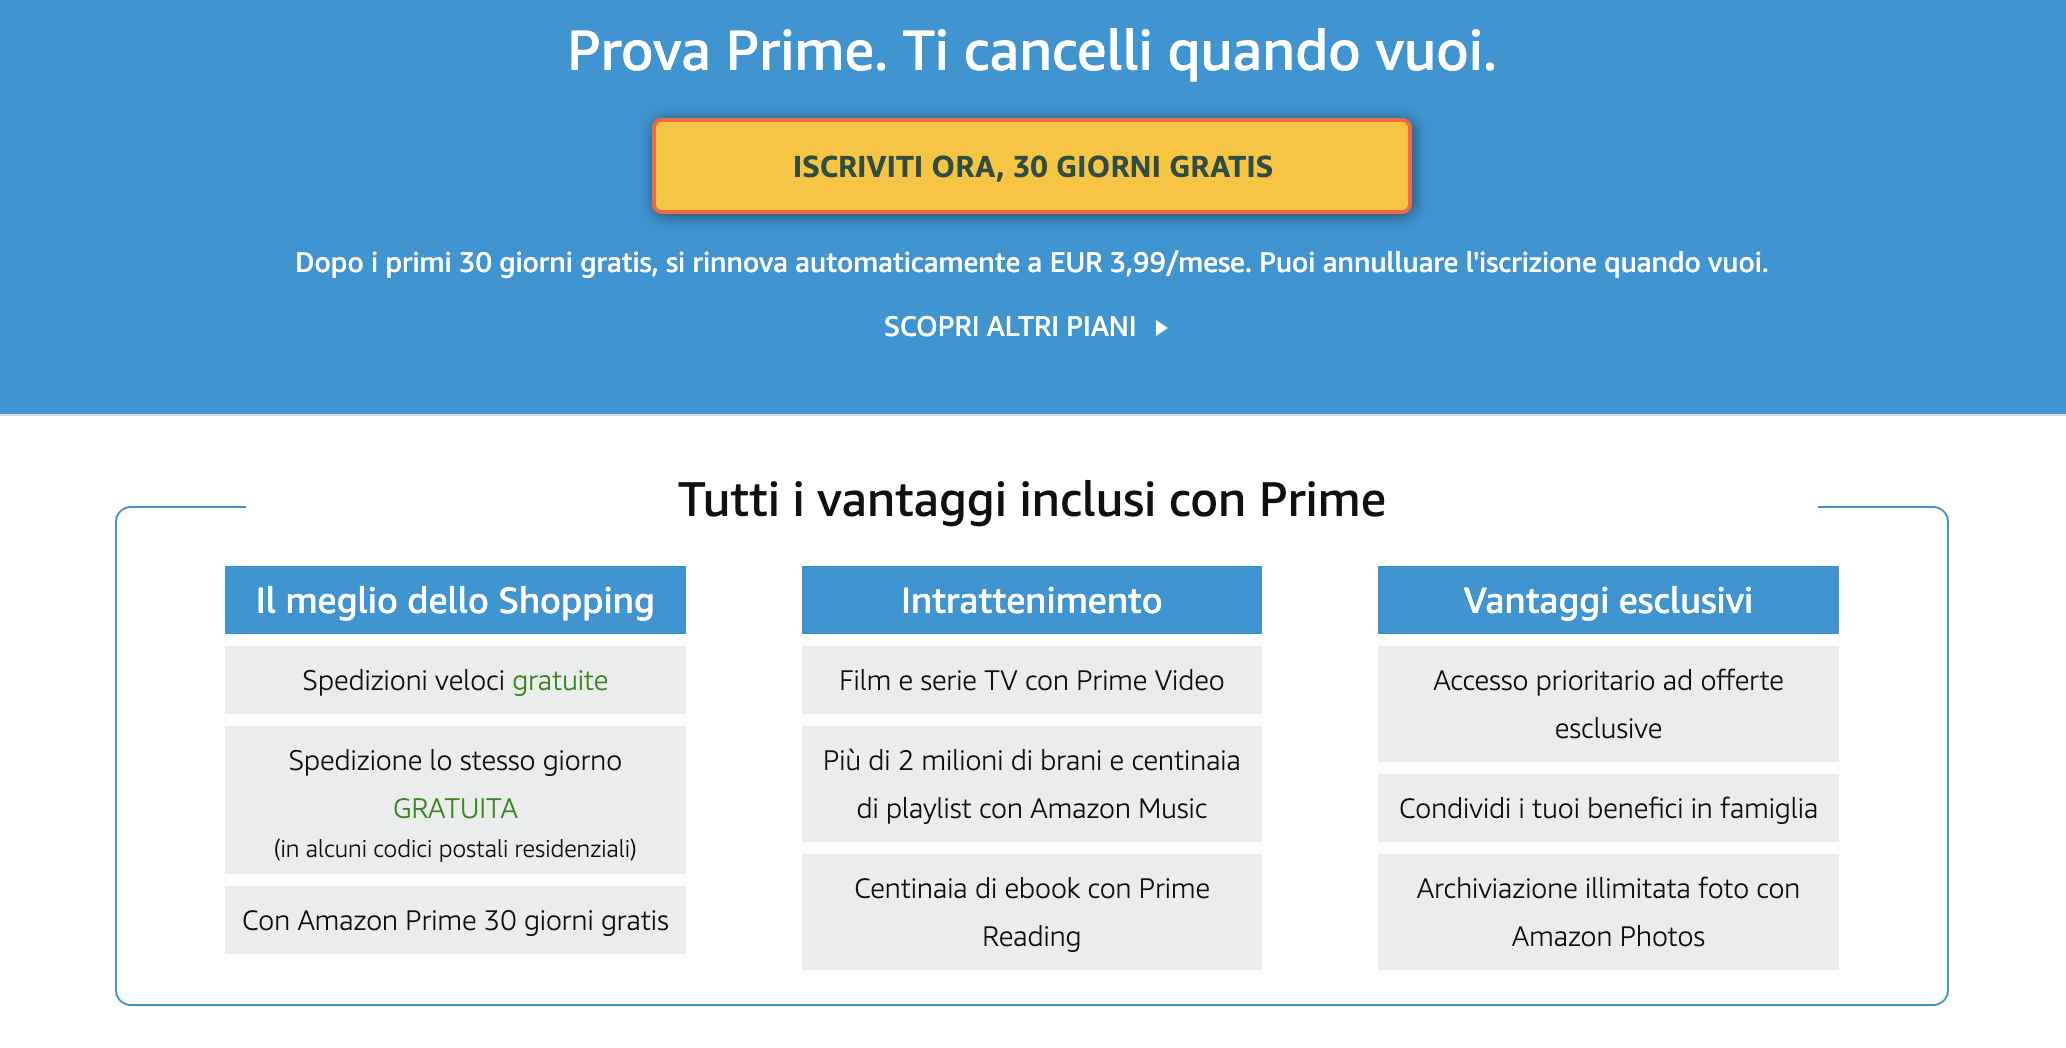 Esempio di programma fedeltà su abbonamento: Amazon Prime di Amazon.